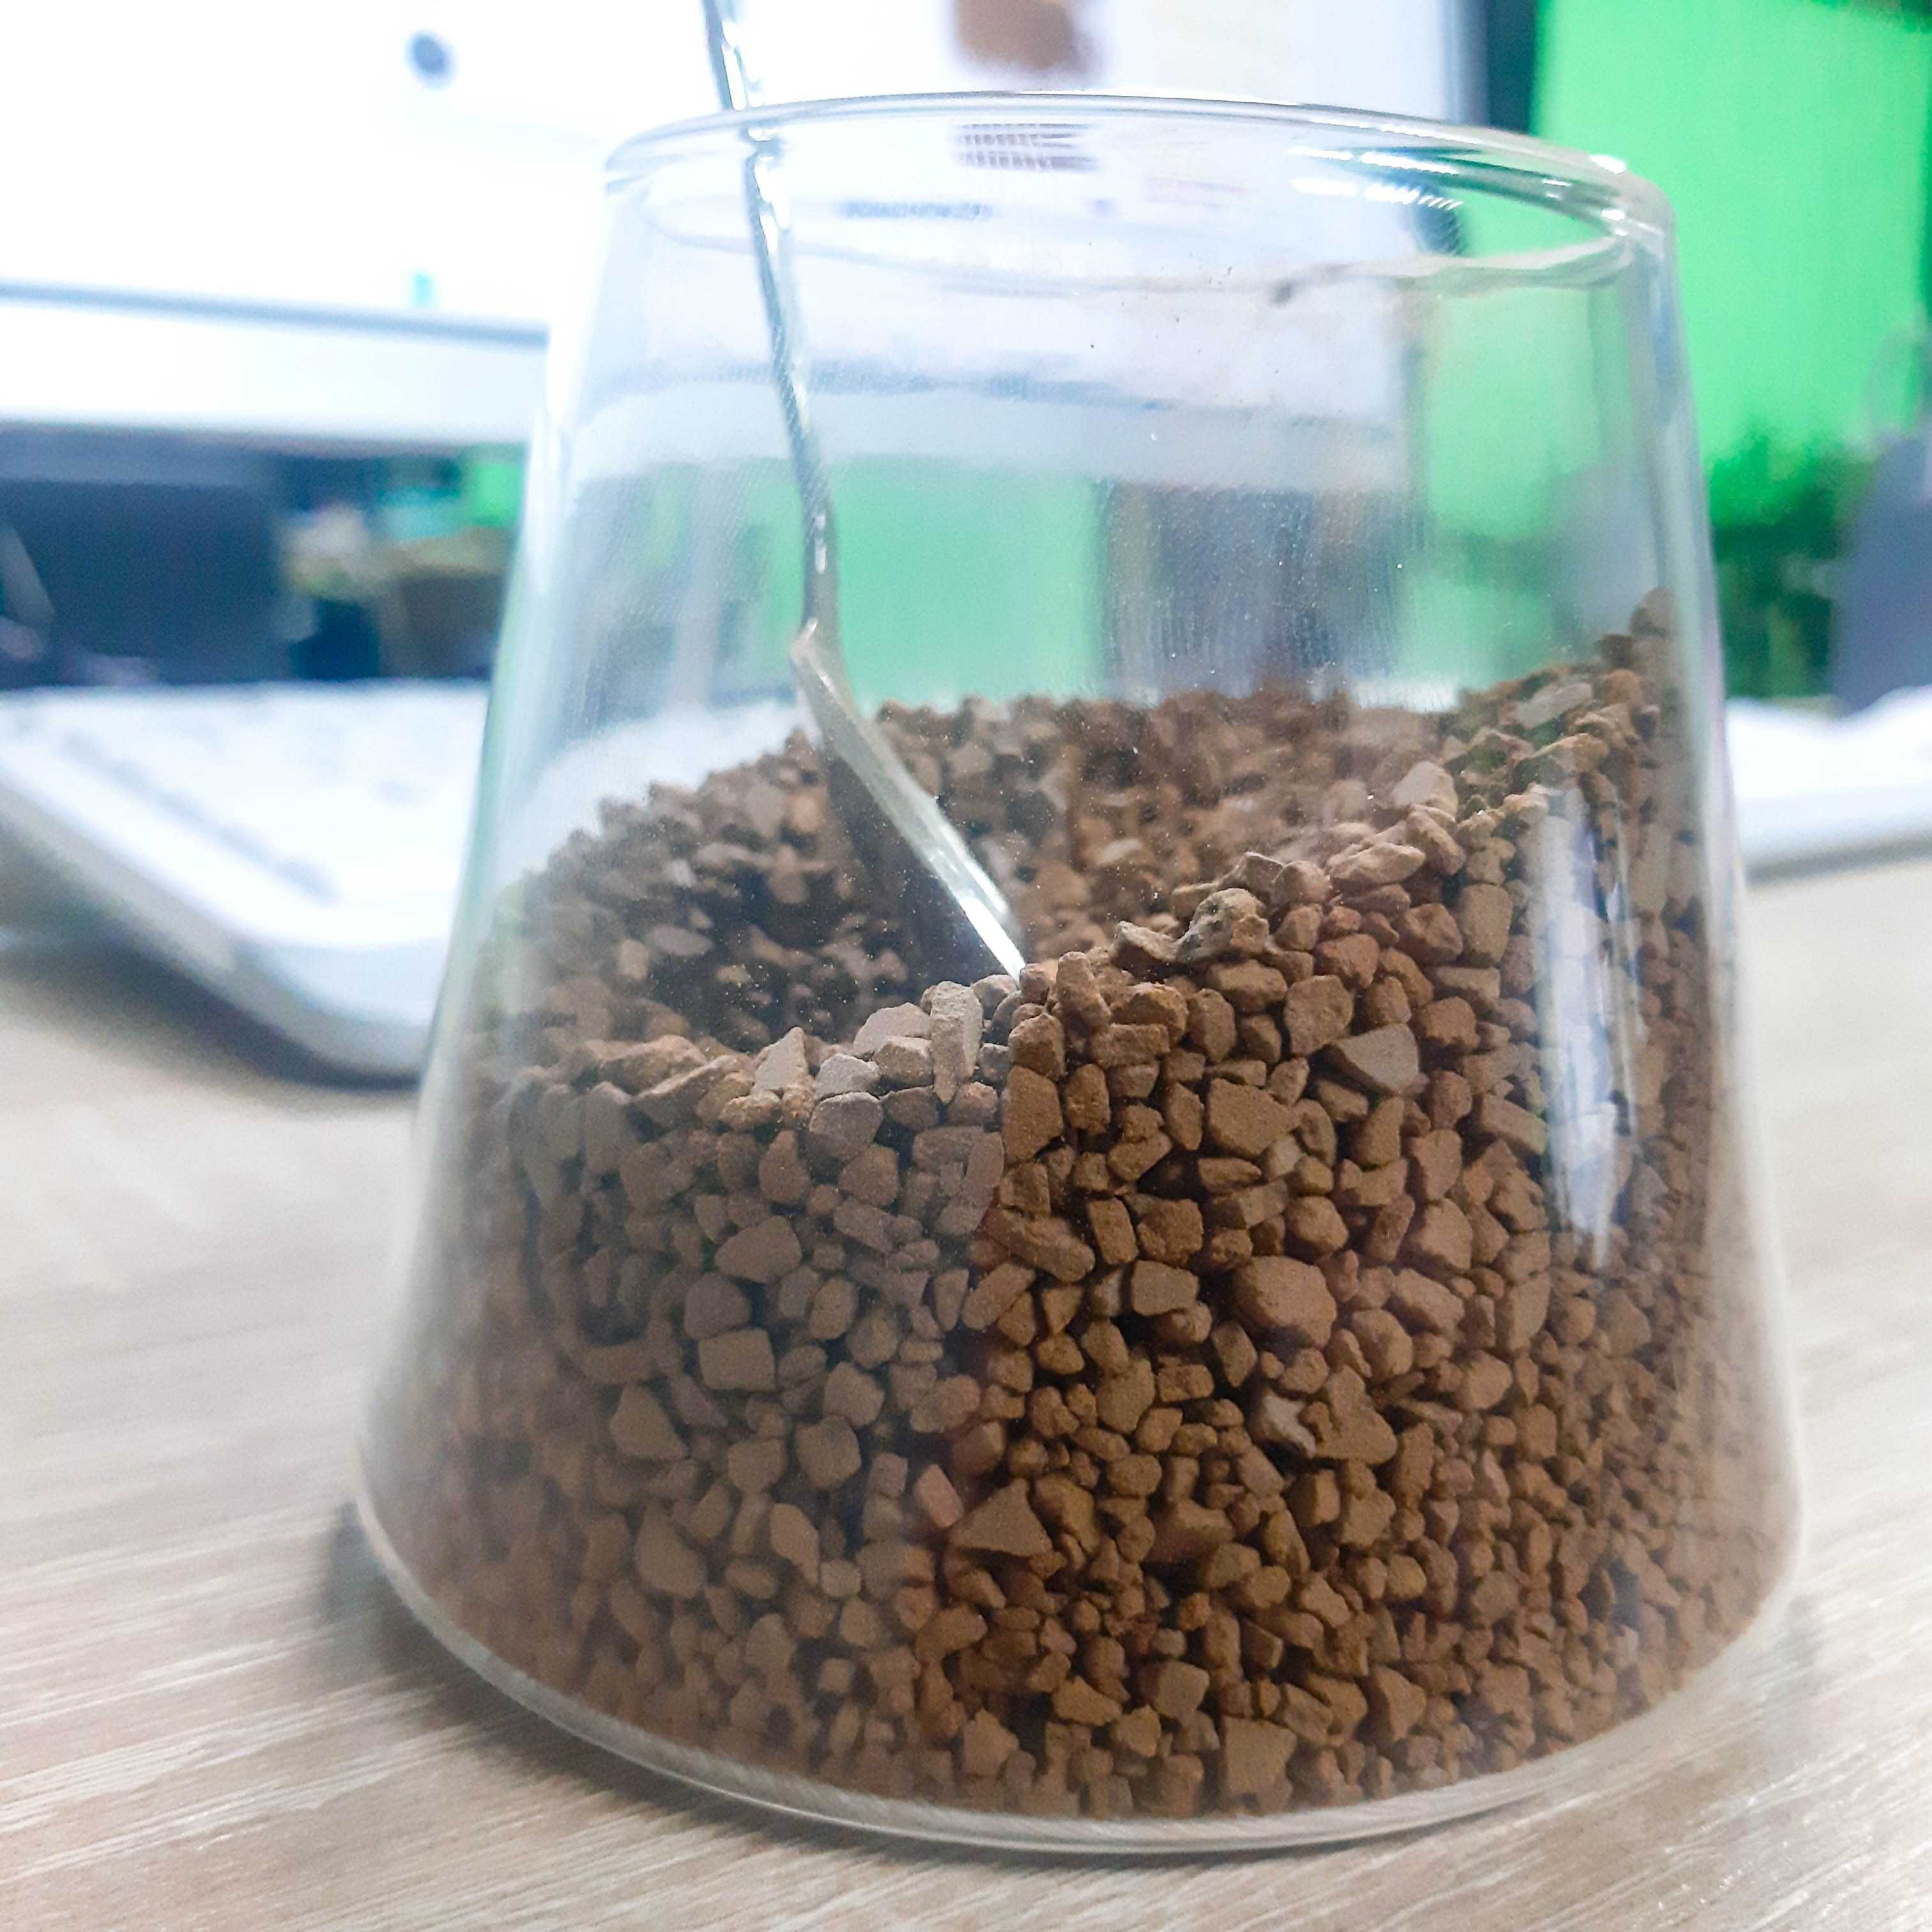 Растворимый кофе ТОП качества. НЕ кислый. Вкуснее якобс 44 грн—100 гр.